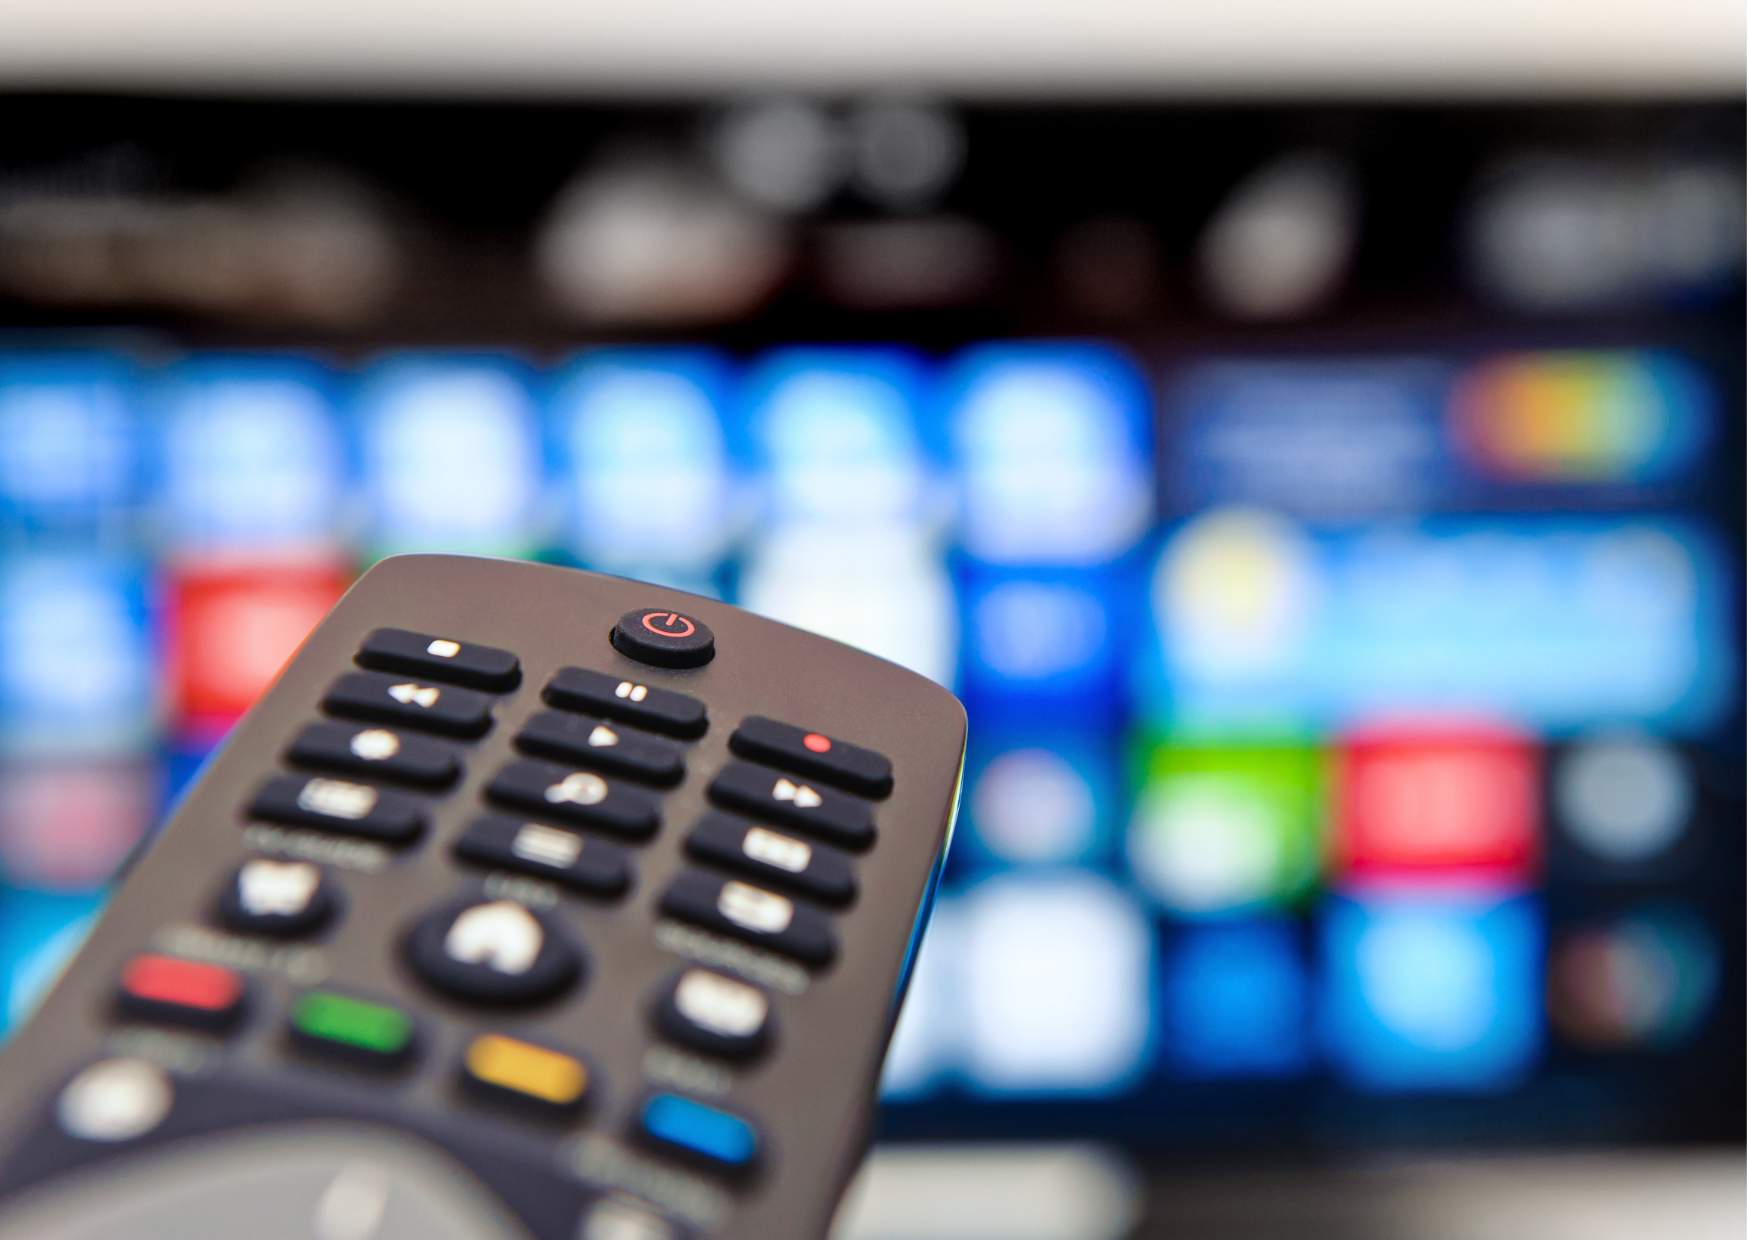 Come scegliere la nuova tv Caratteristiche tecniche da valutare